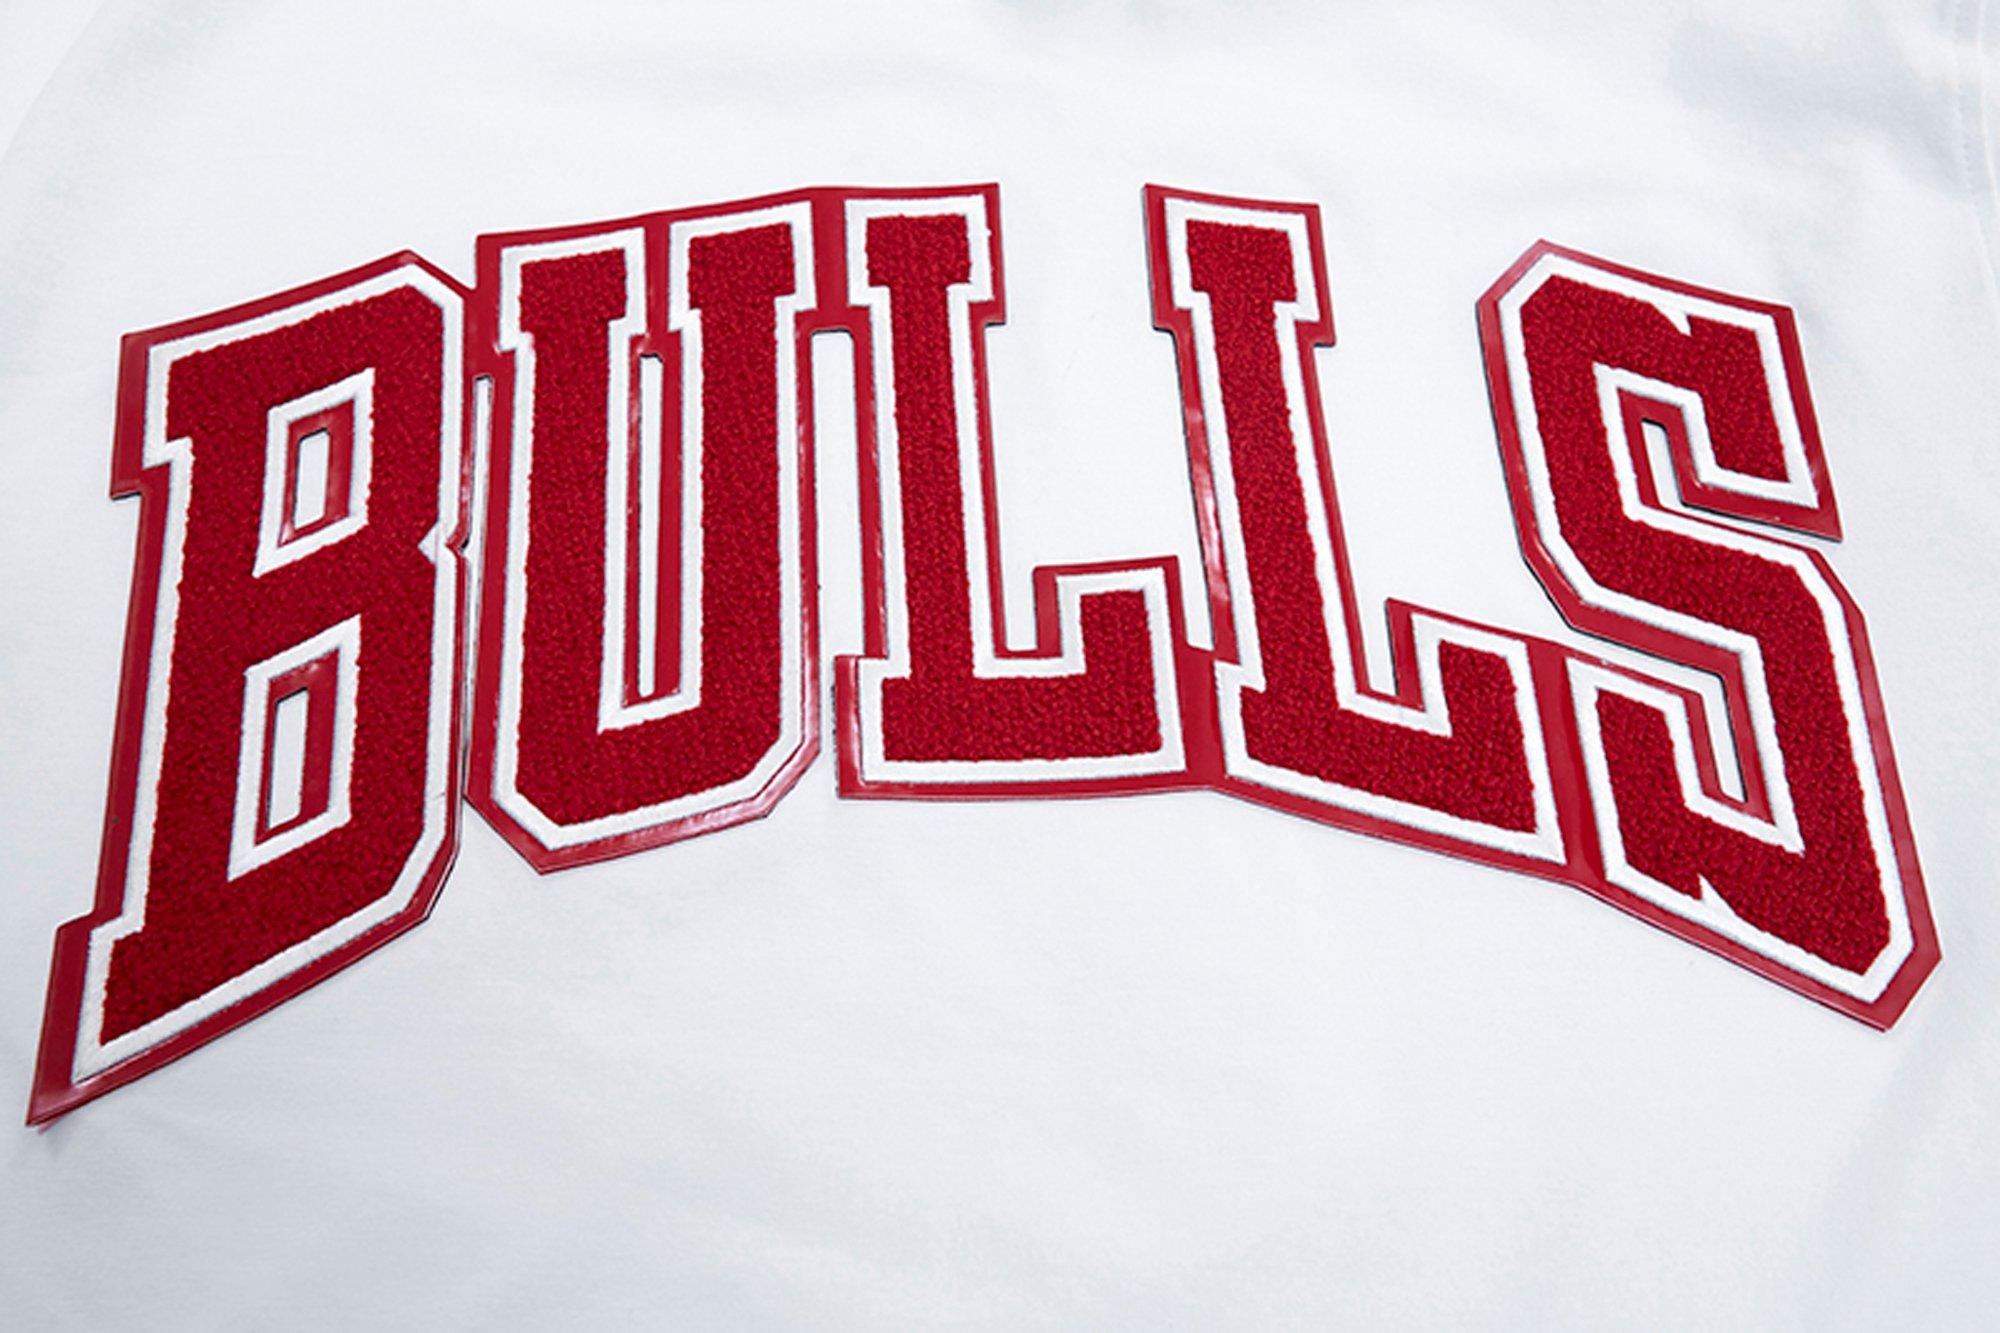 Pro Standard Men's Chicago Bulls Bred Patch T-Shirt - Hibbett